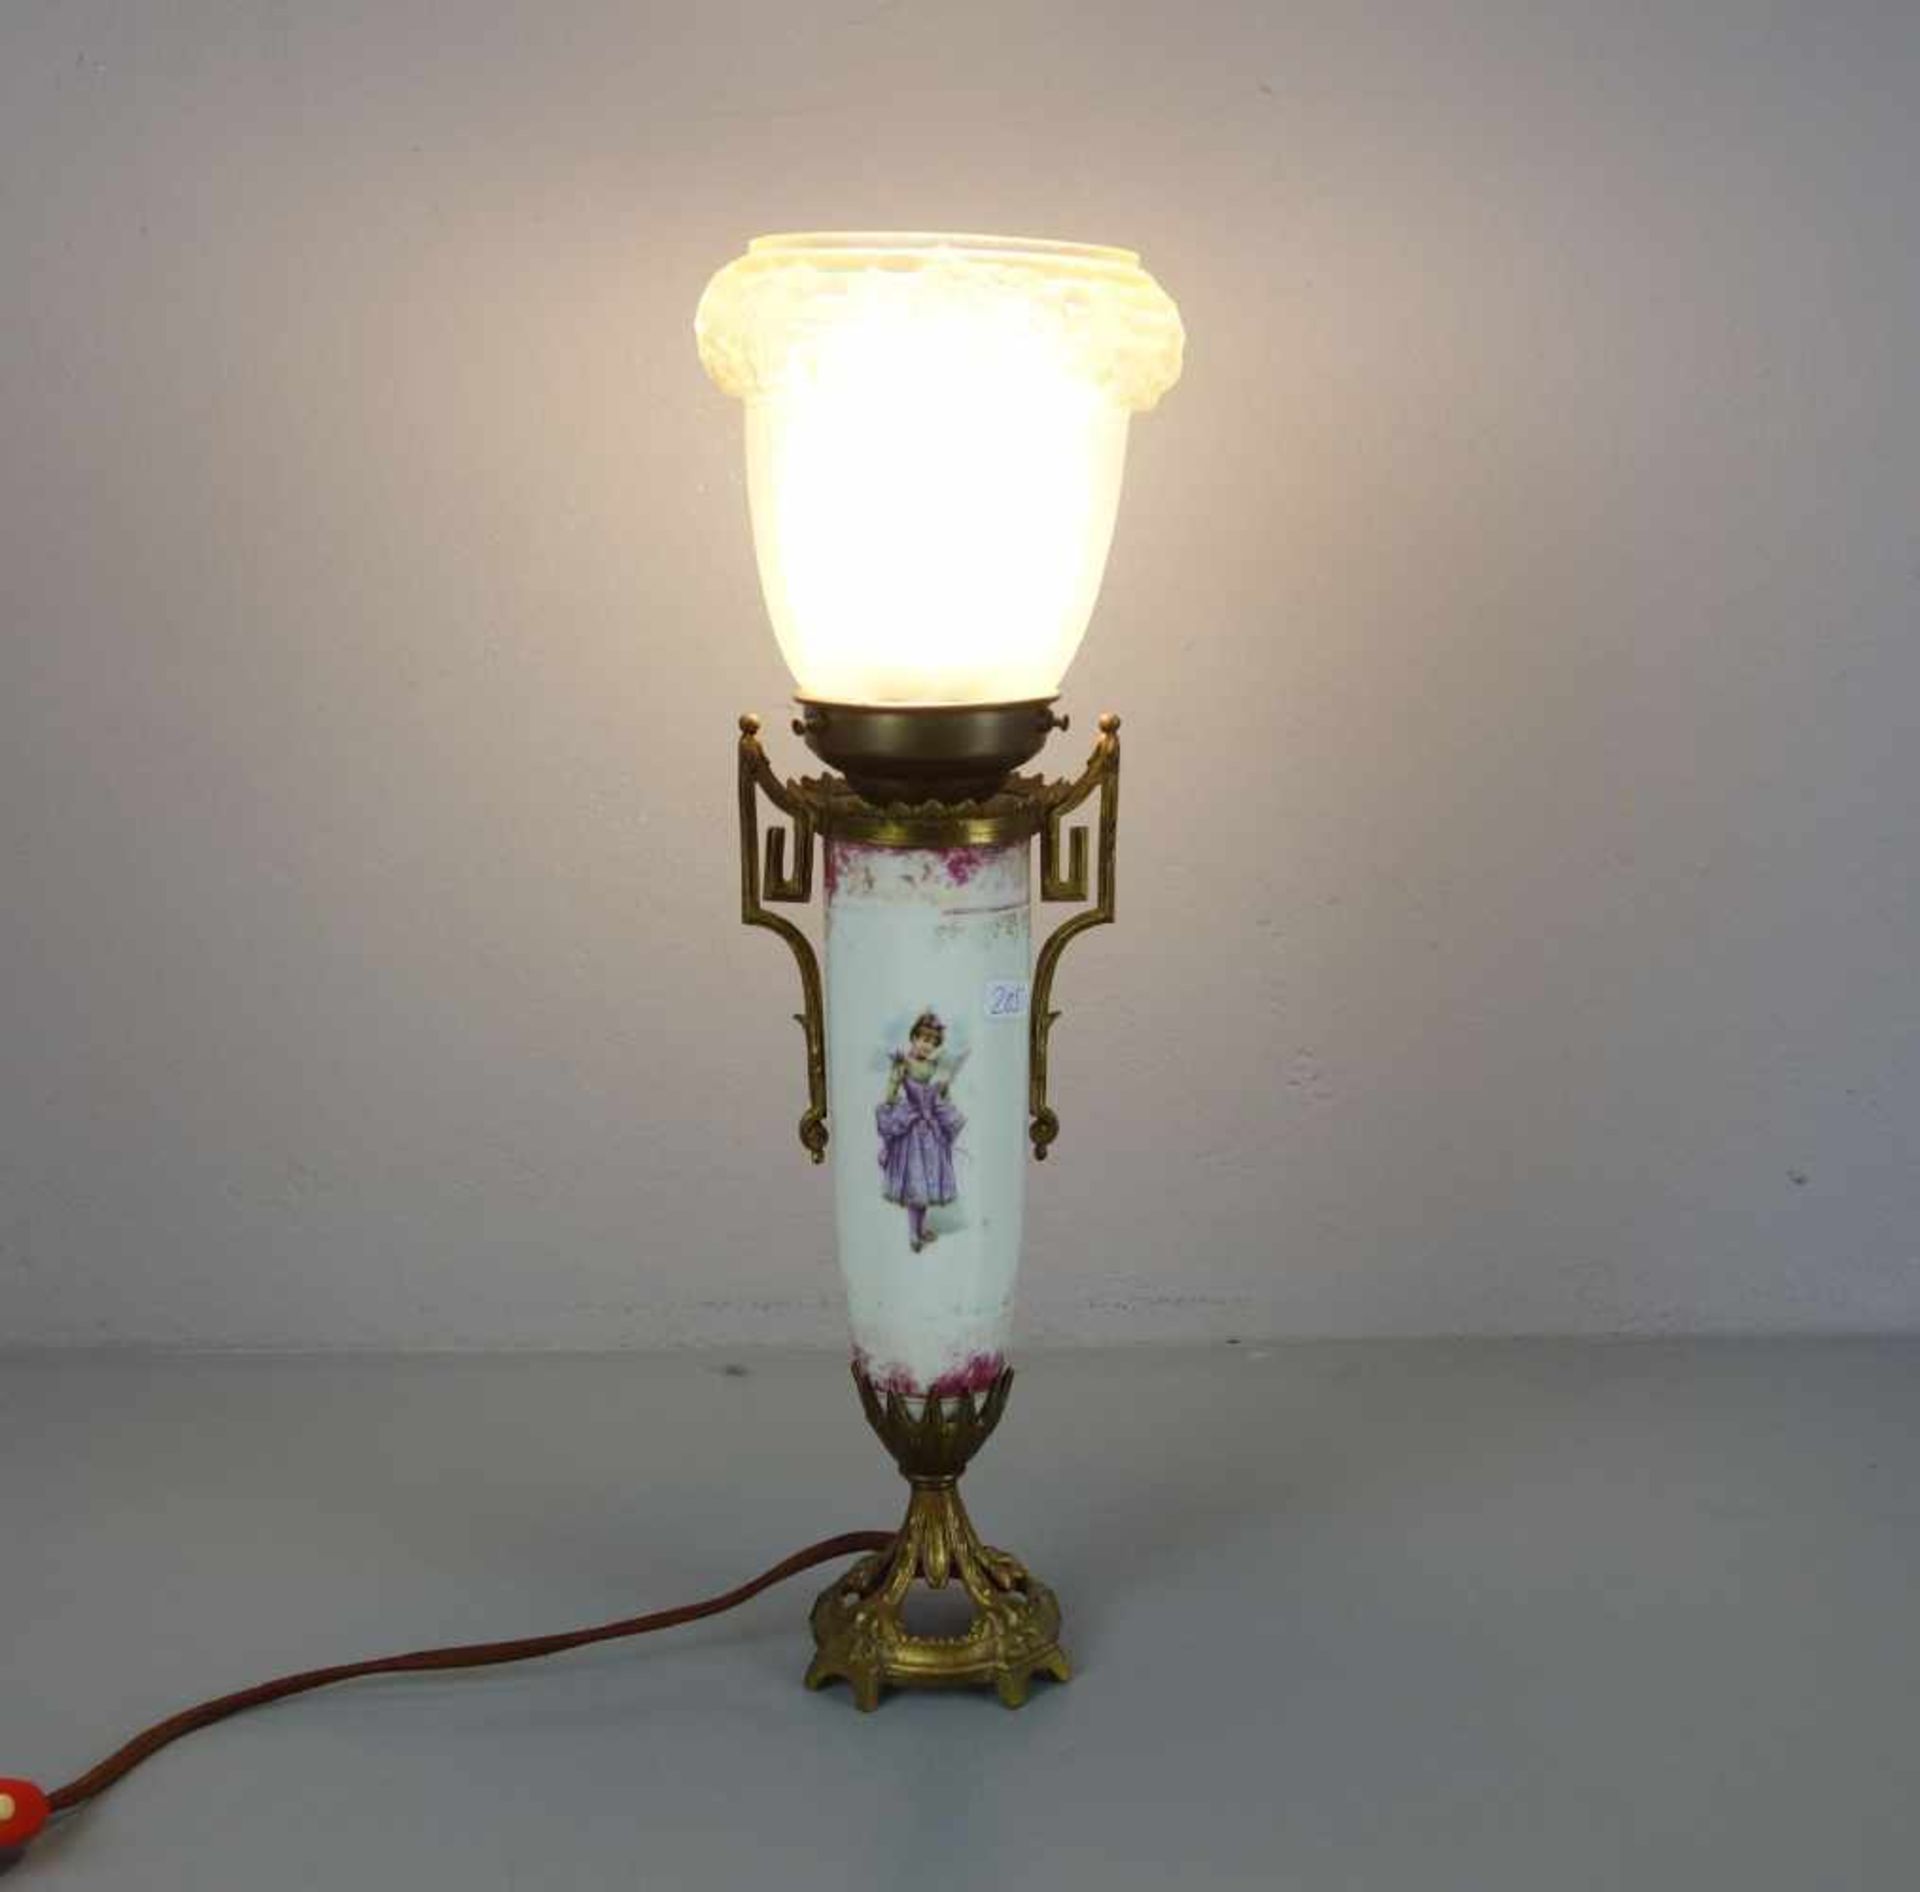 TISCHLAMPE / table lamp, Mariage. Satinierter Lampenschirm mit erhabenem Eichenlaub-Dekor. Schirm